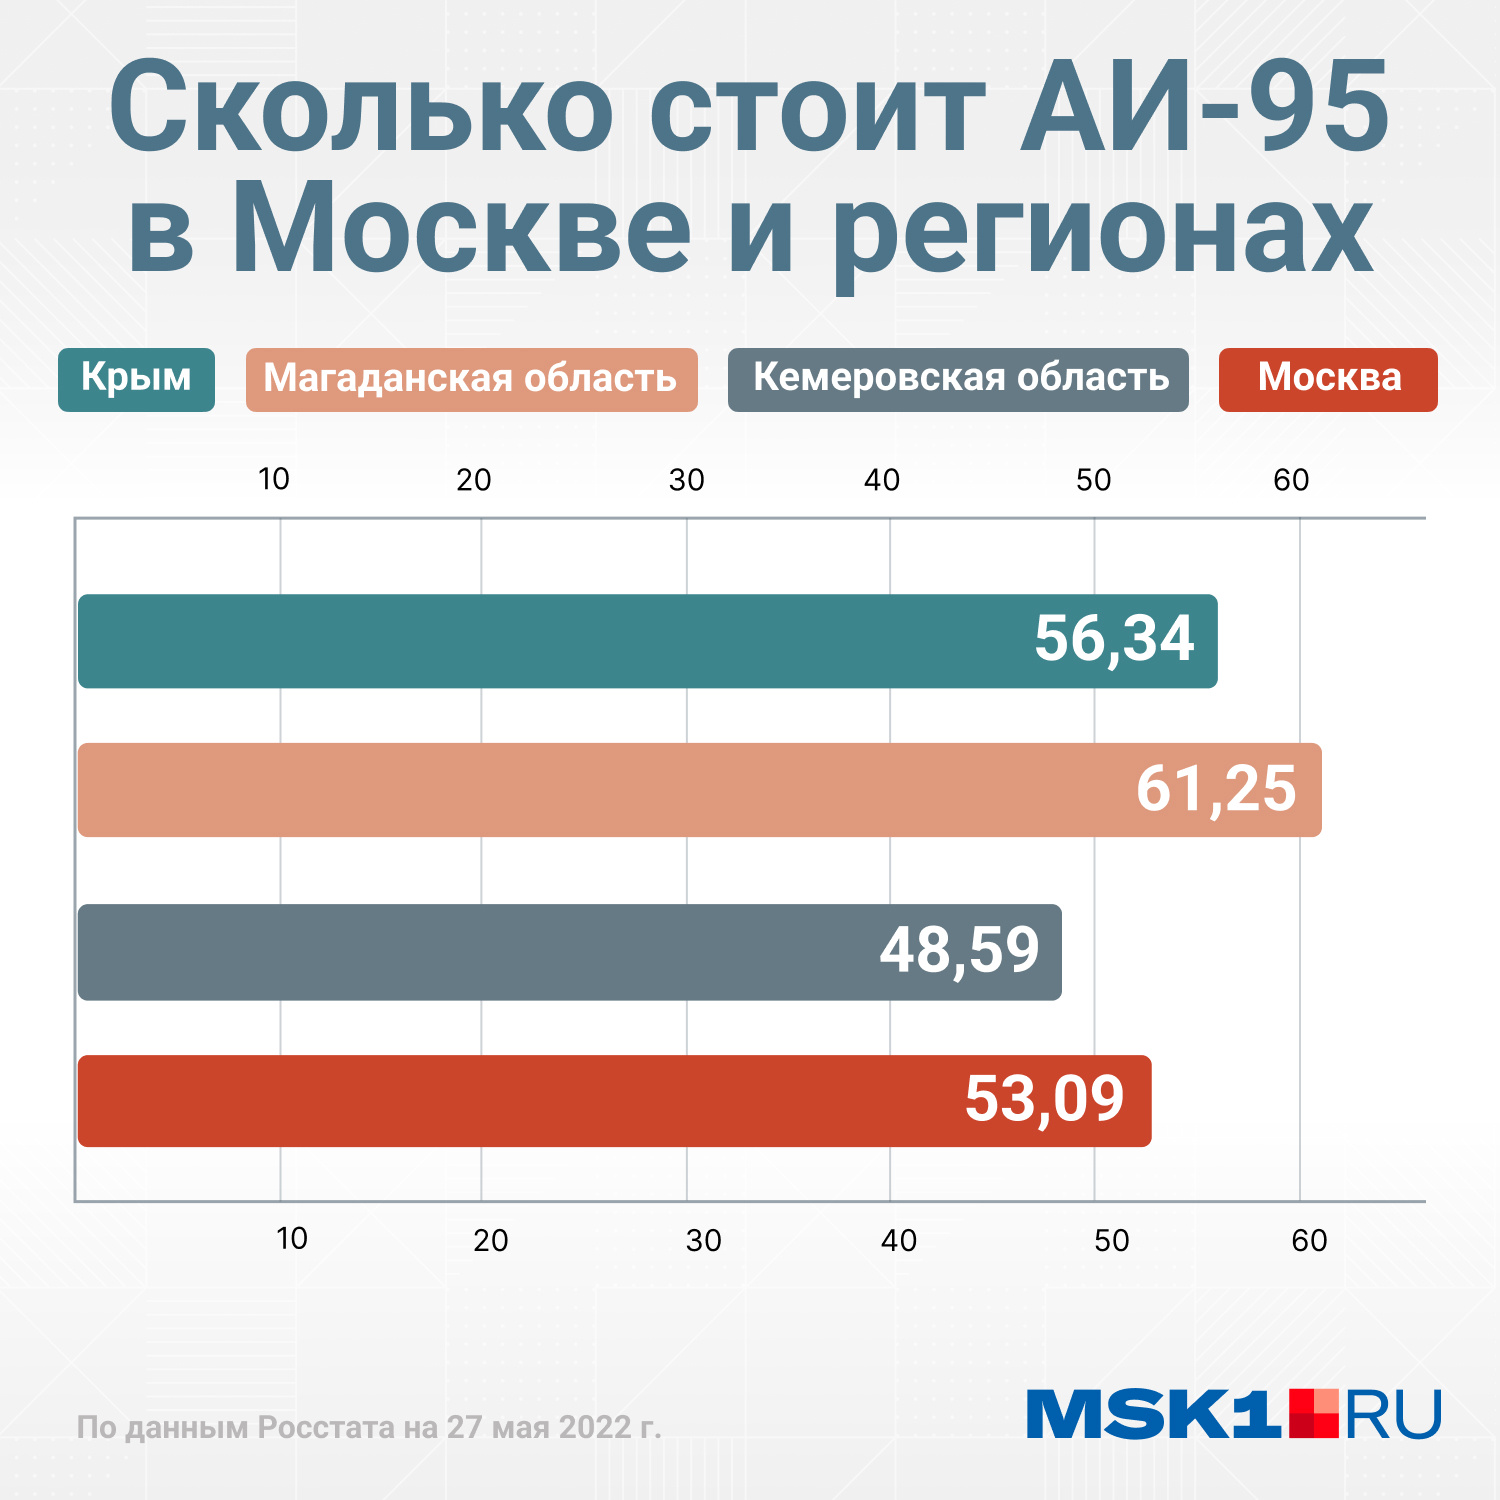 Цена бензина в 95 году. Рост цен на бензин. Цены на бензин. Стоимость бензина в Москве. Сколько стоит бензин в Москве.